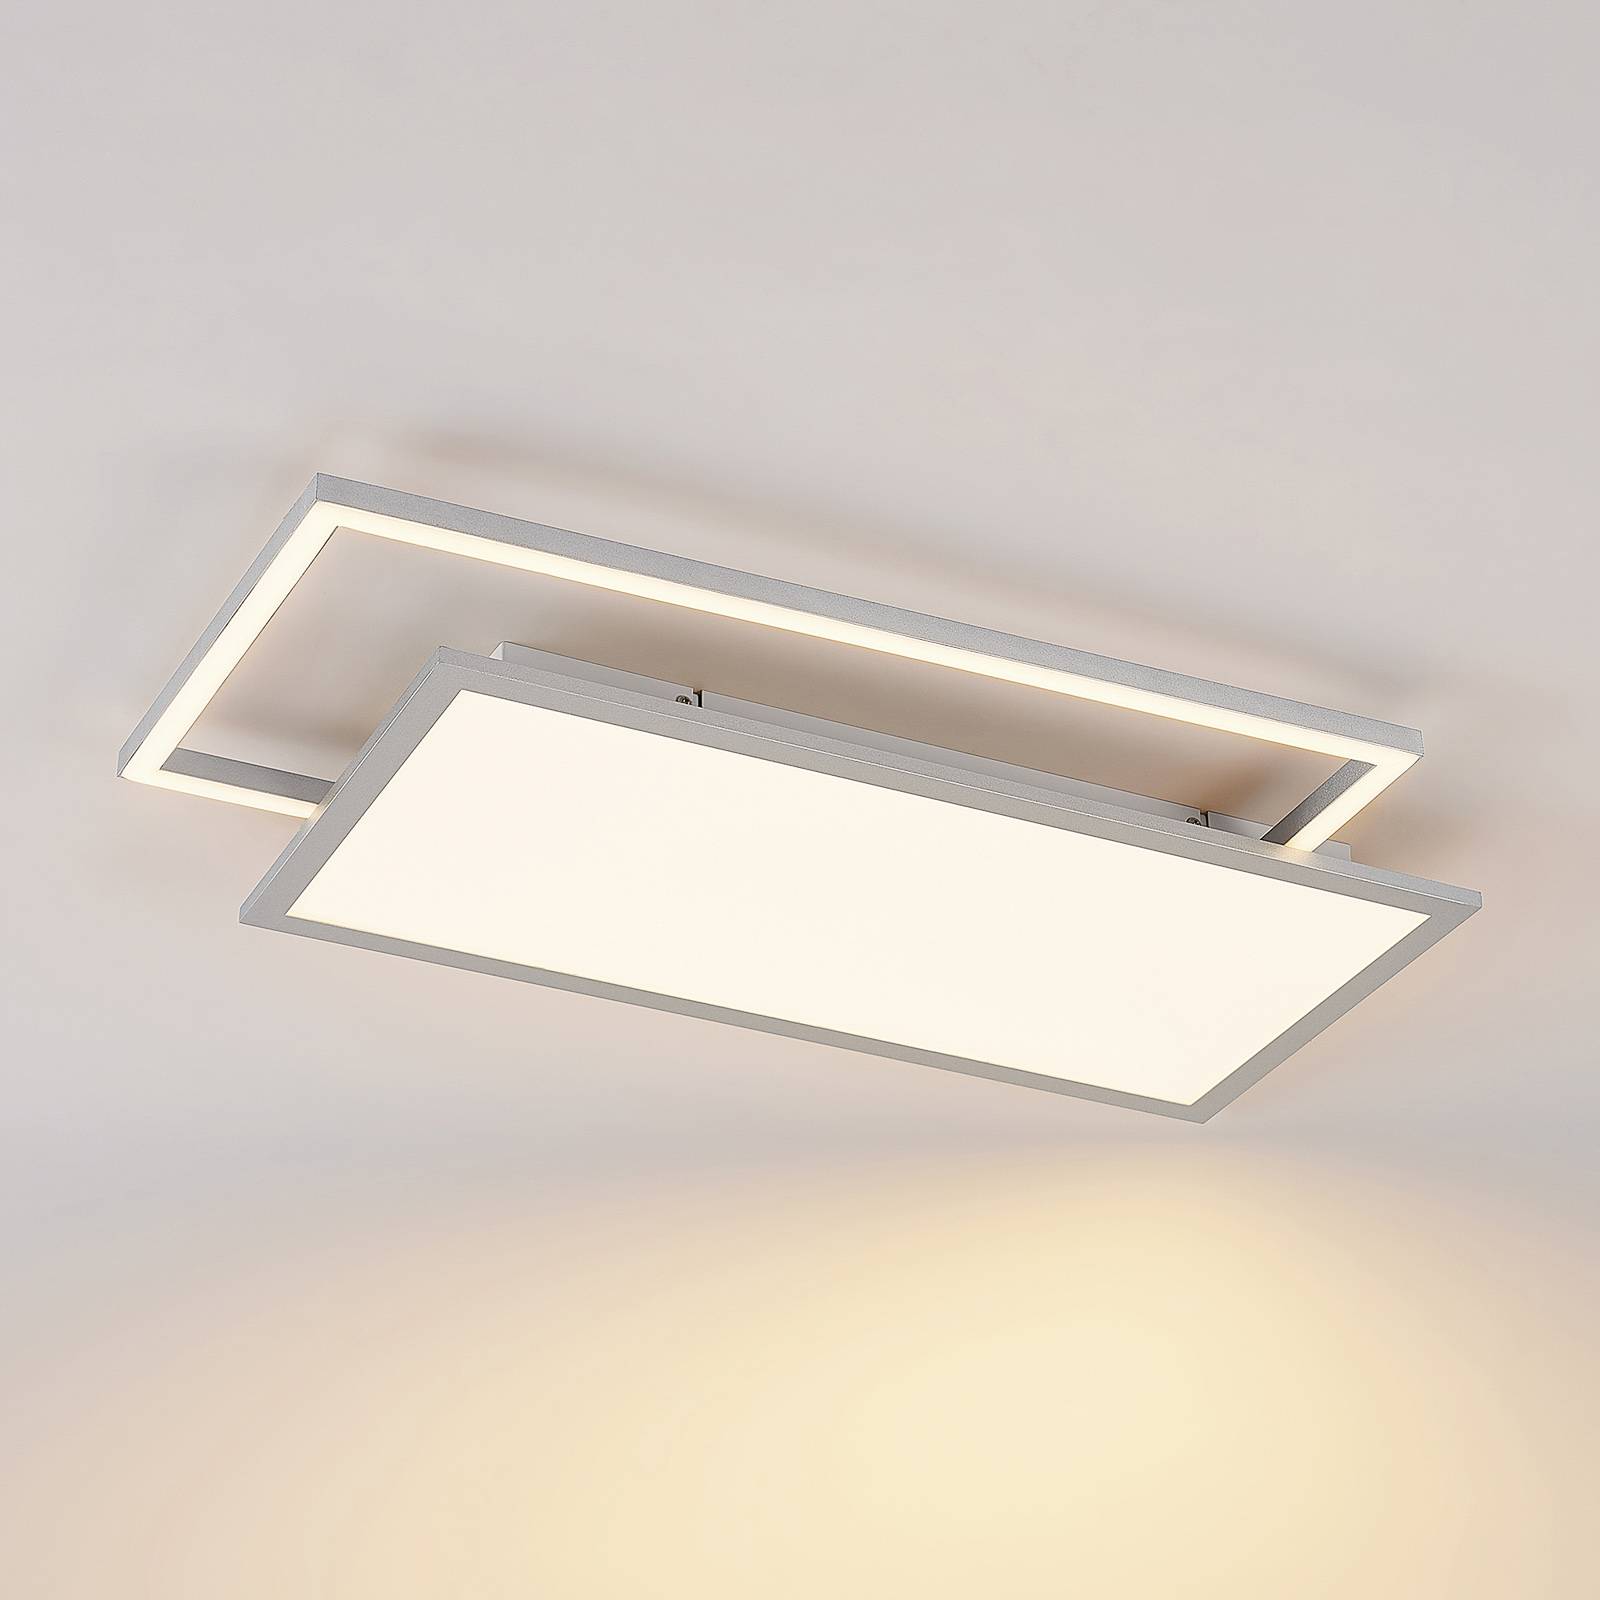 Lucande LED Deckenleuchte 'Senan' Deckenlampe Metall Modern dimmbar 'Senan'